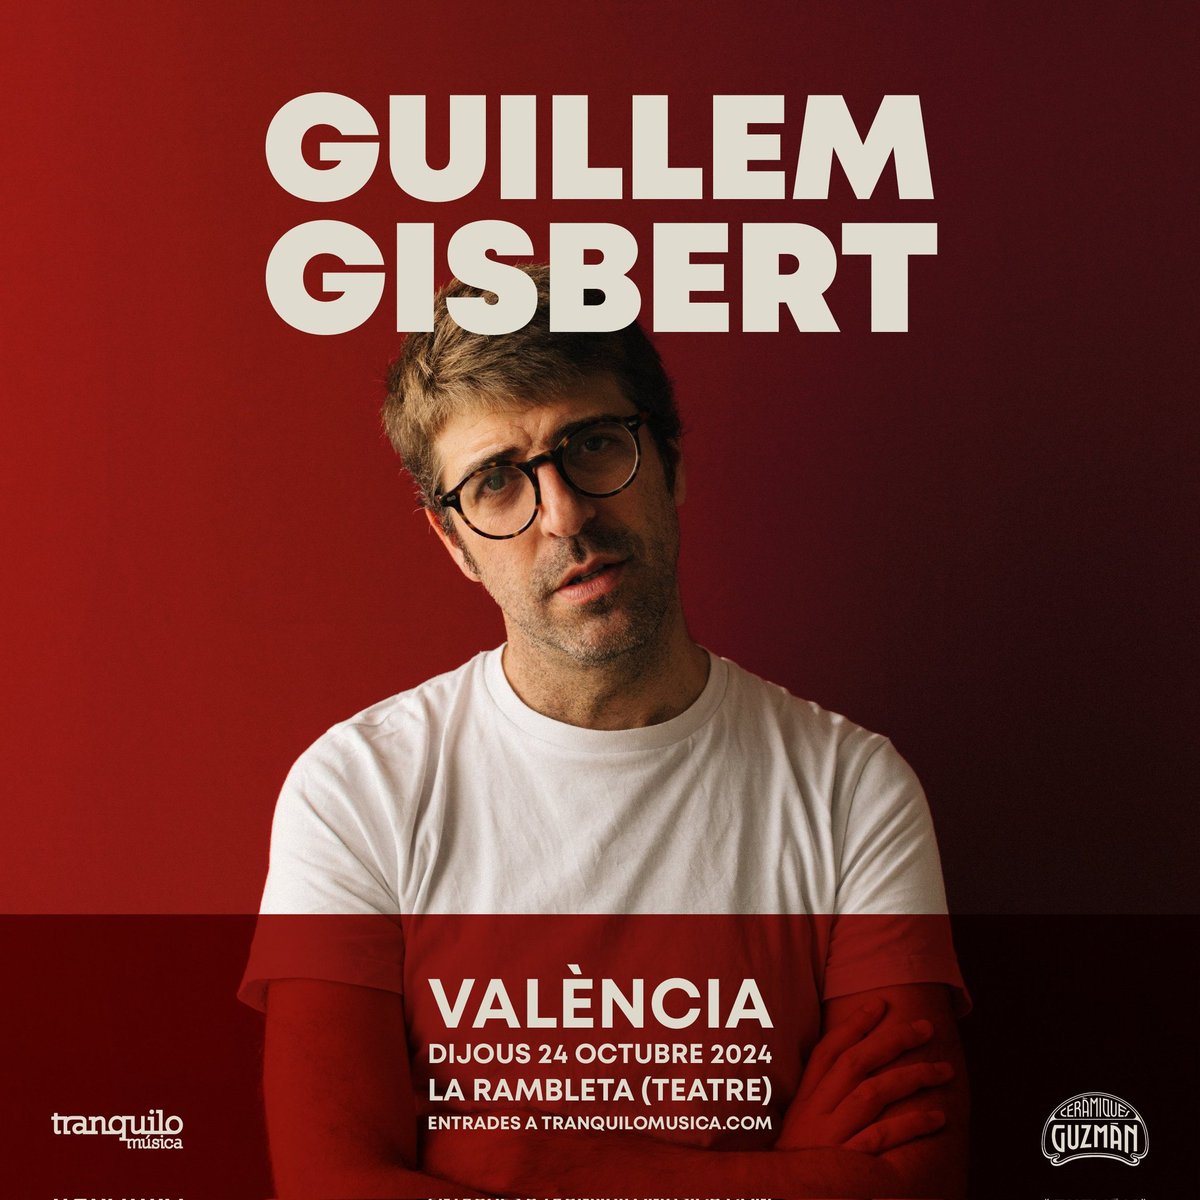 @GuillemGisbert, 24 d'octubre de 2024 a l'Auditori de @La_Rambleta. Entrades ja a la venda: bit.ly/43PVXMa